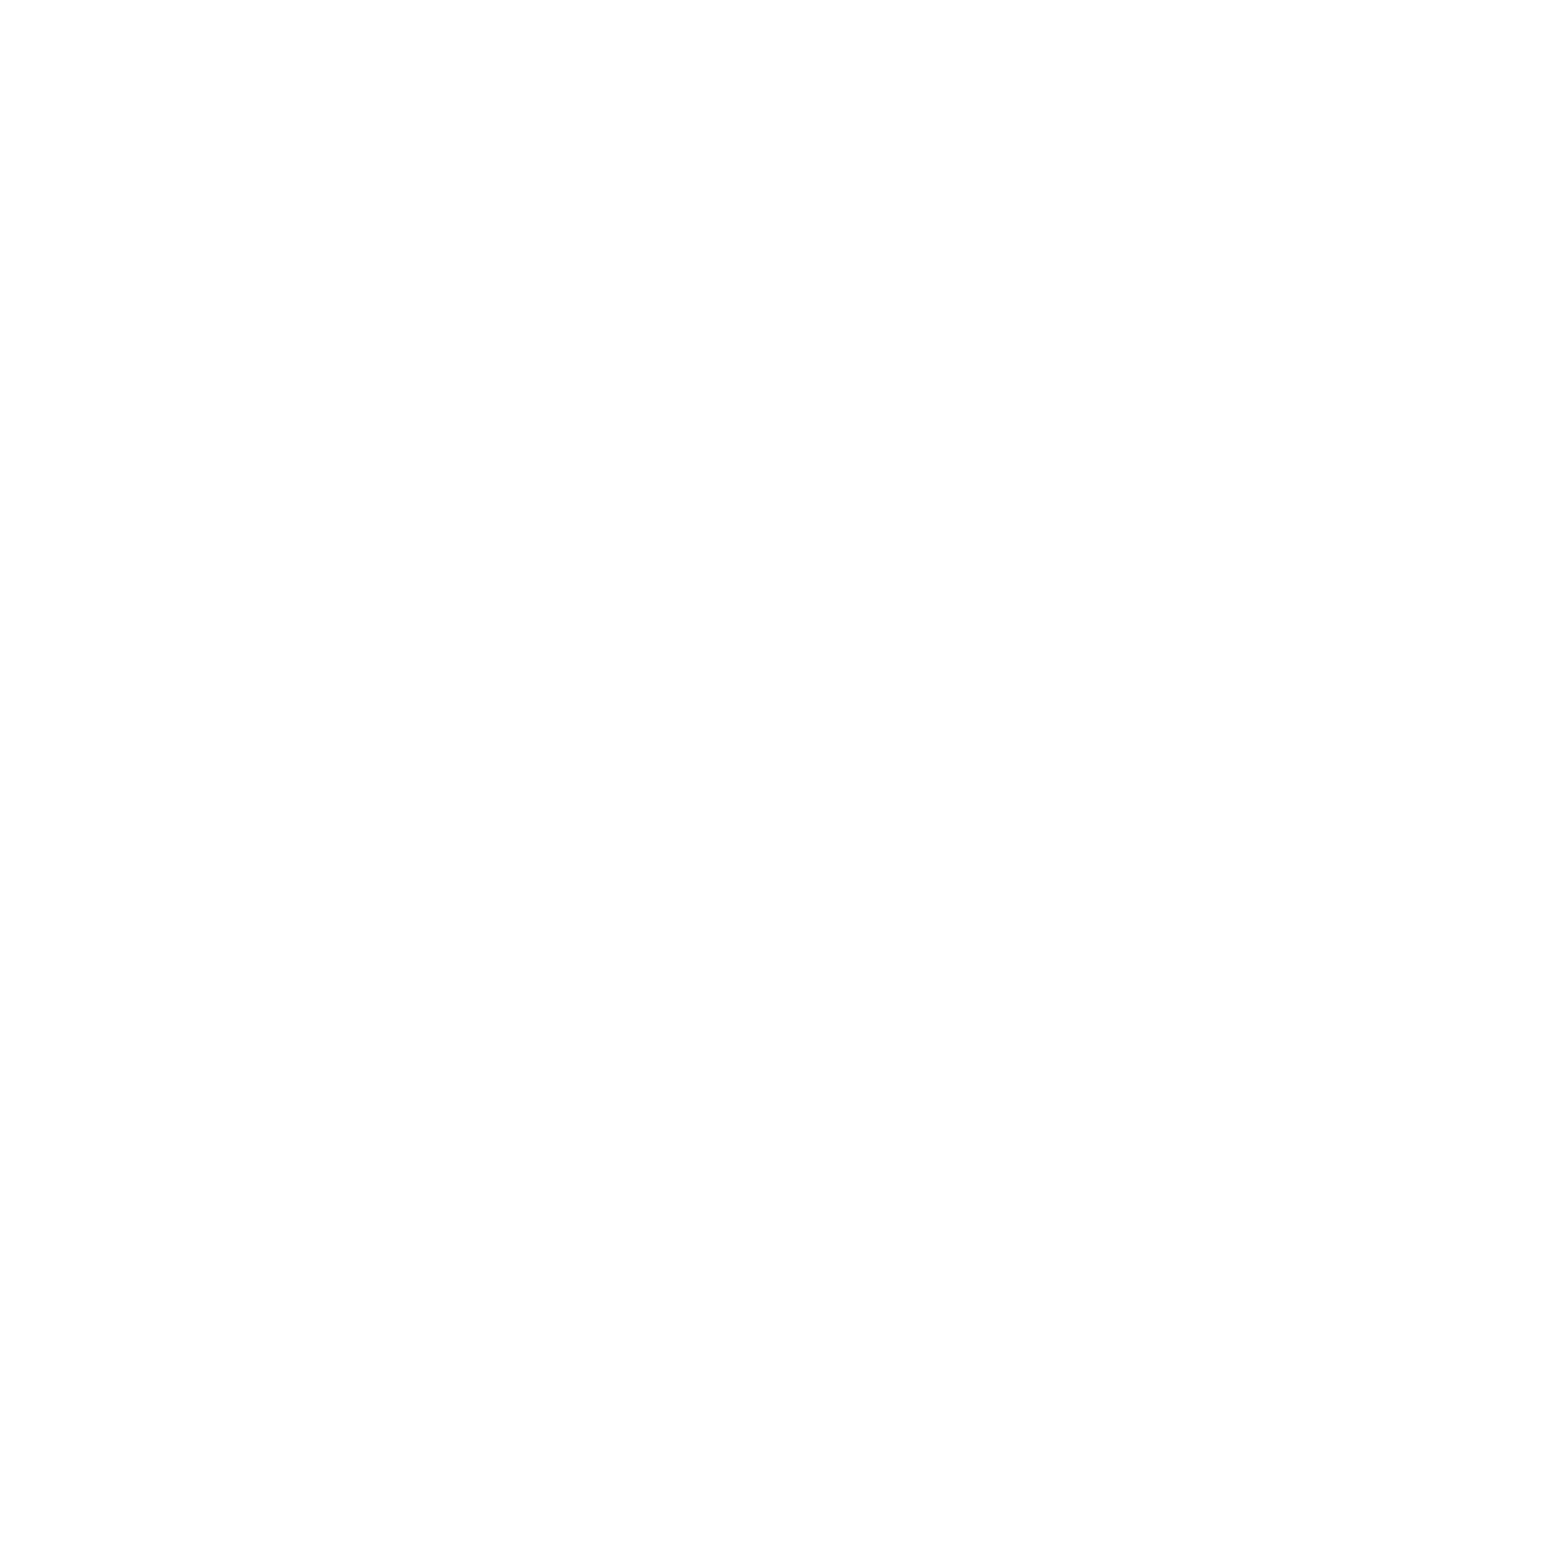 Zevra Therapeutics logo pour fonds sombres (PNG transparent)